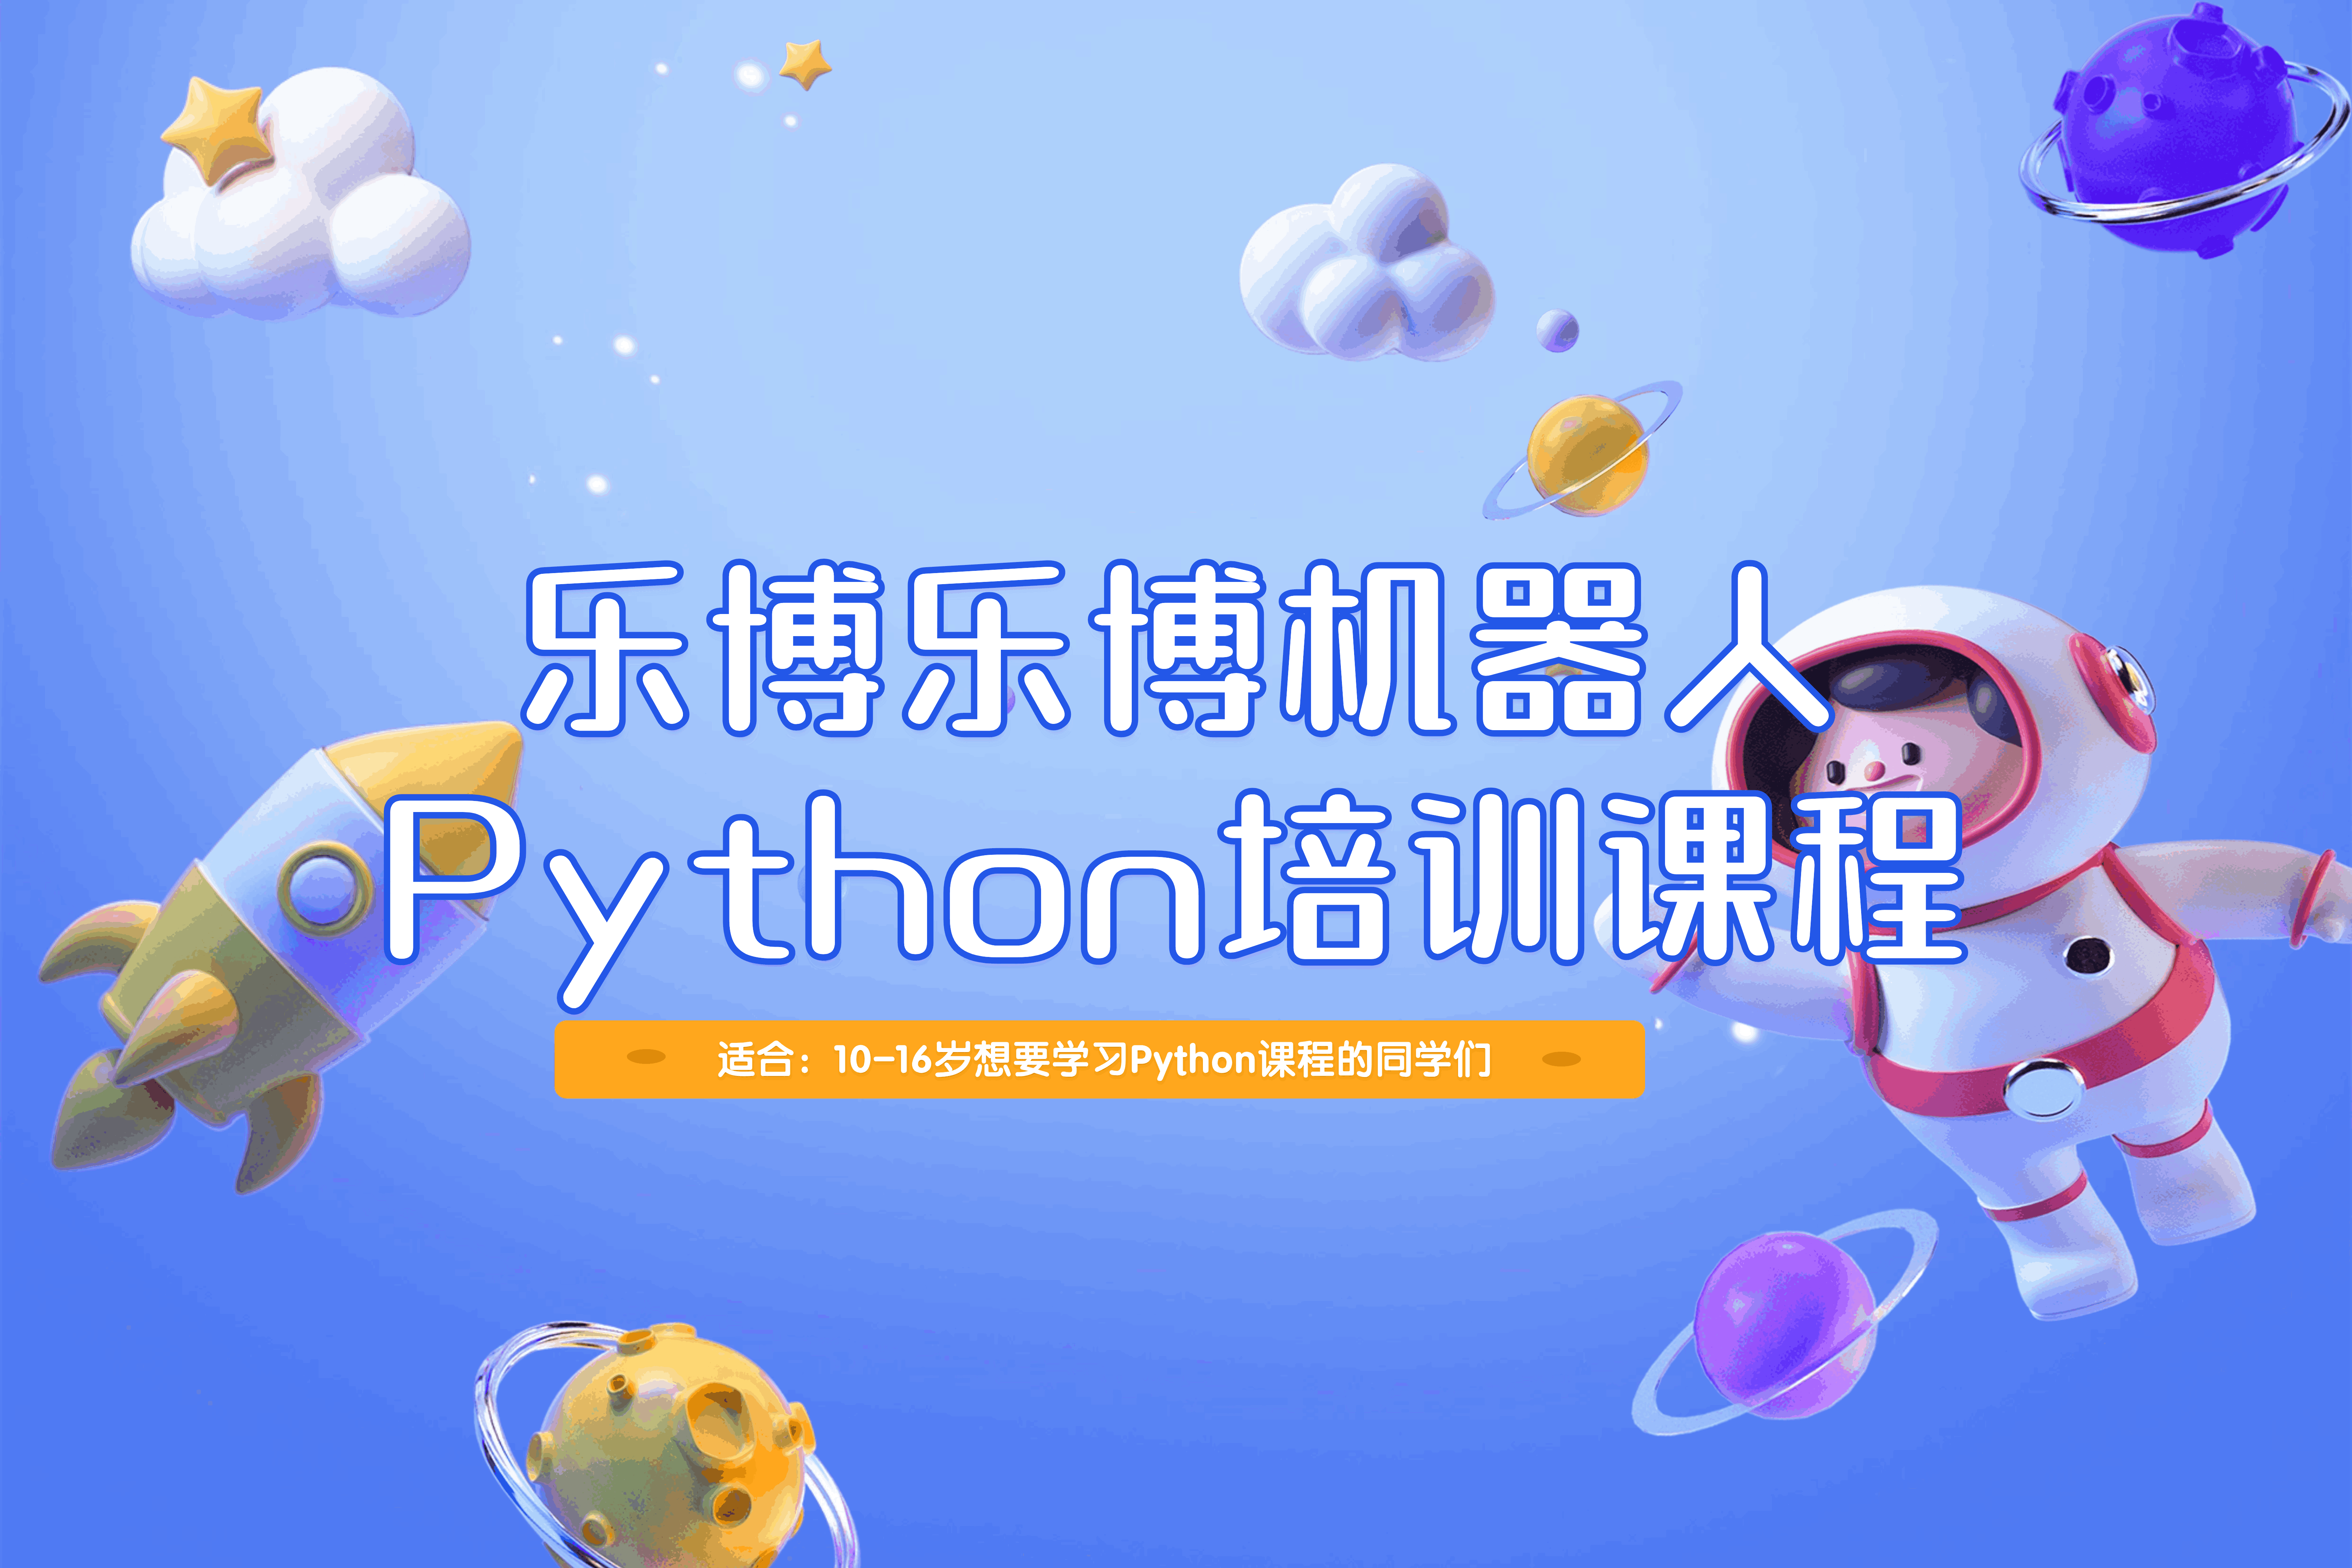 郑州乐博乐博机器人郑州乐博乐博Python培训课程图片